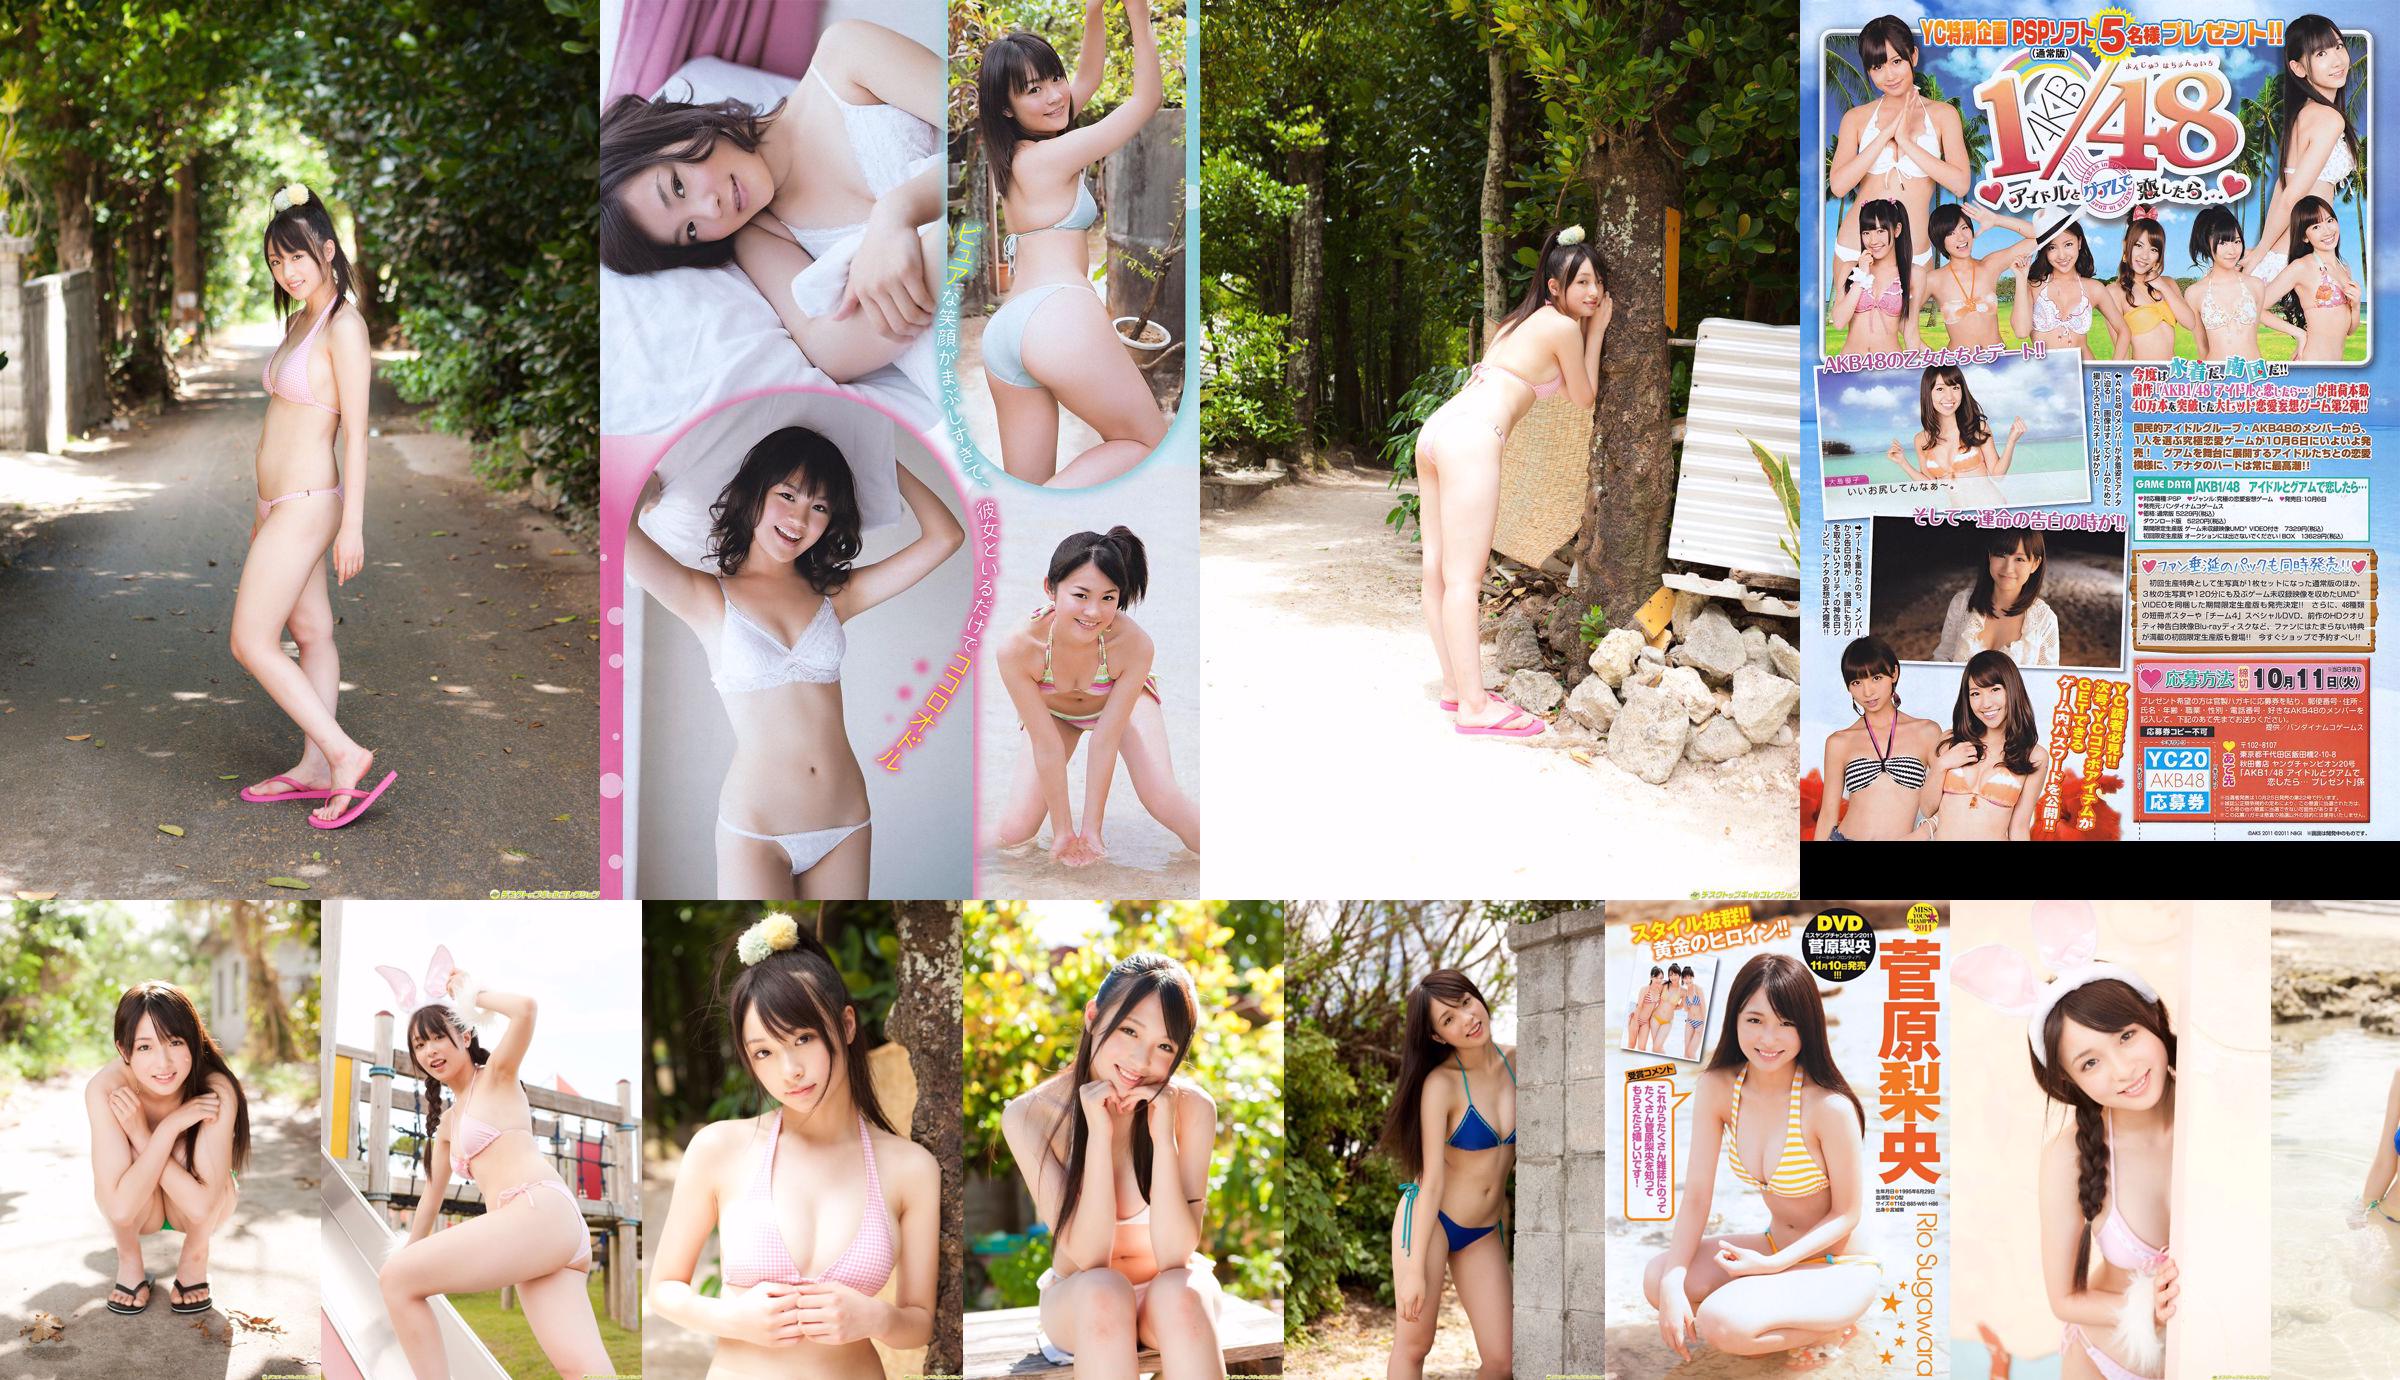 [Młody mistrz] Sugawara Risa, Horikawa Mikako, Matsushima no lub 2011 nr 20 Photo Magazine No.5e6b8f Strona 1